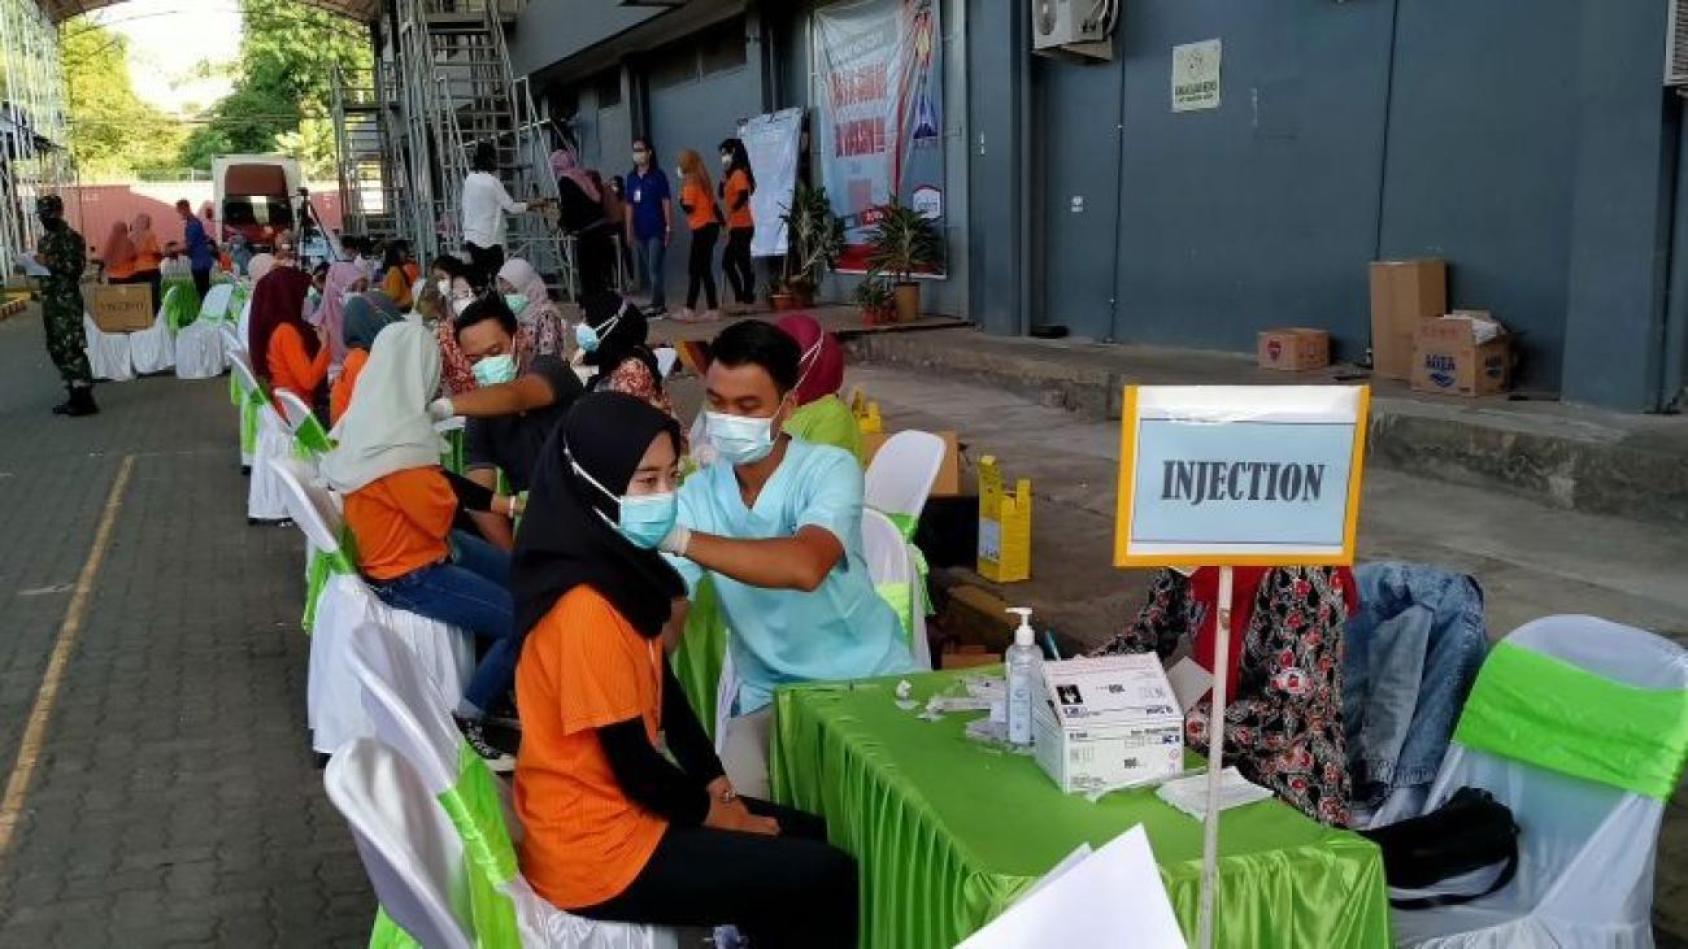 برنامج اللقاح المشترك لعمال مصانع الملابس في وسط جاوة، إندونيسيا.